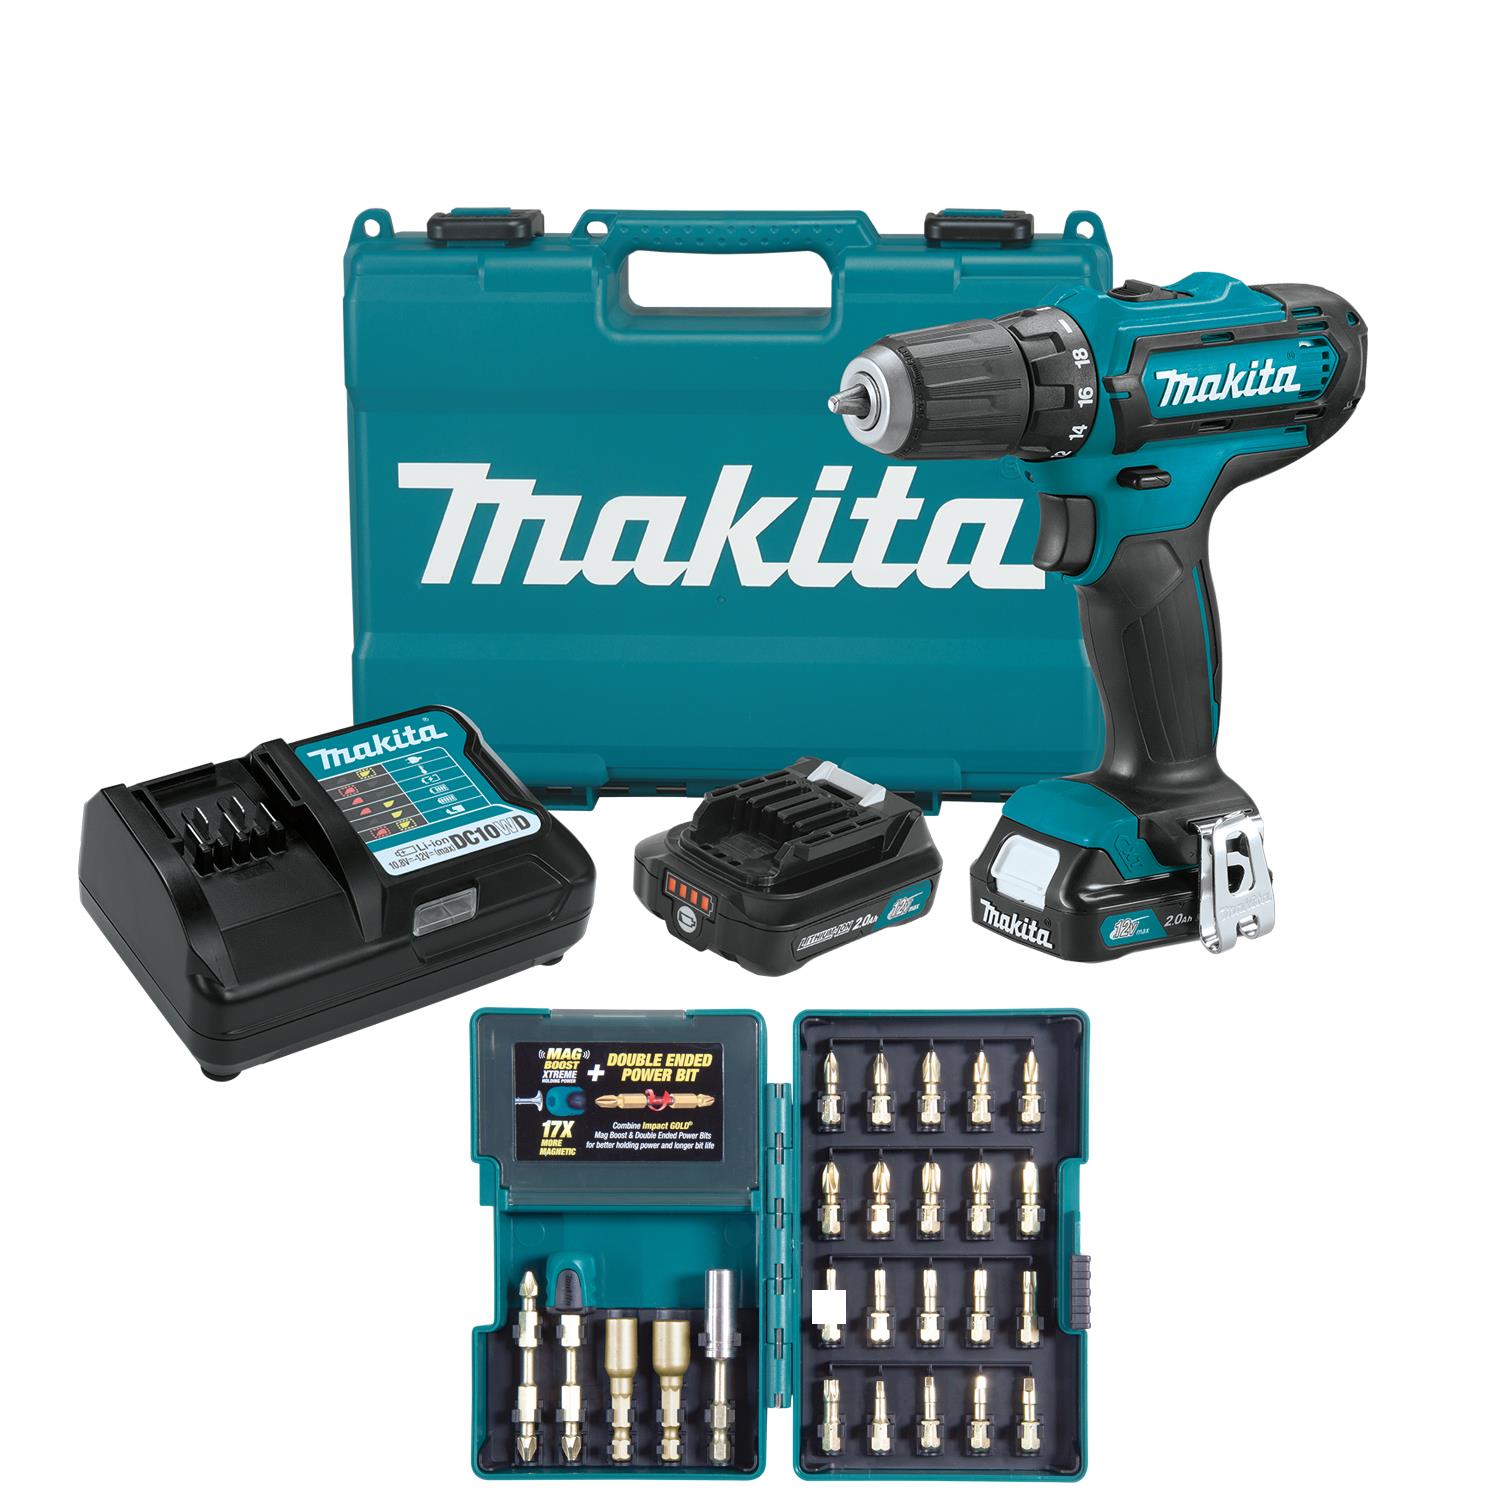 Makita 12V max CXT Lithium-Ion Cordless 3/8" Driver-Drill Kit Set